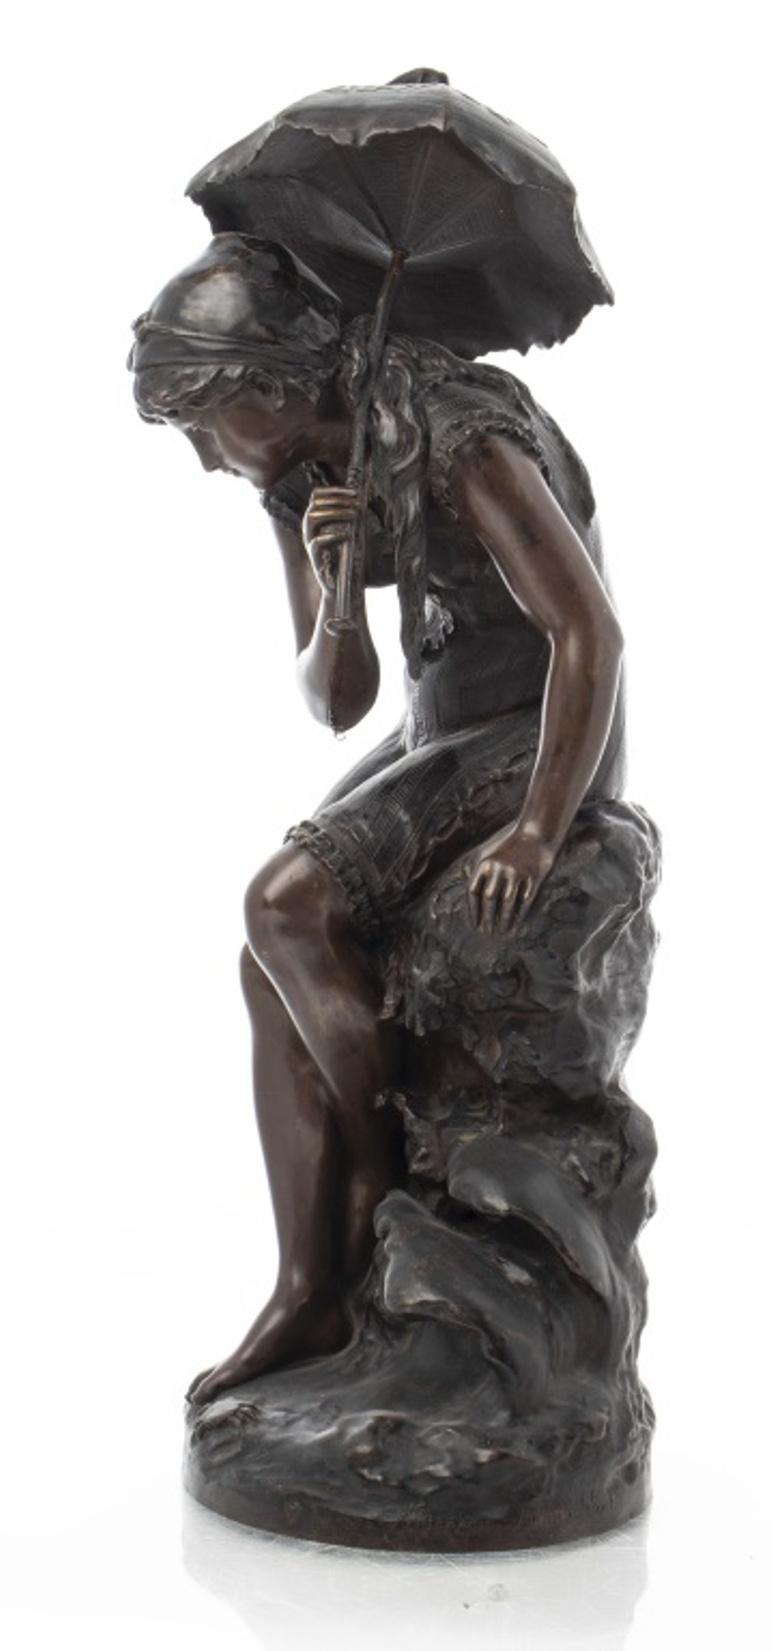 Mathurin Moreau (Français, 1822 - 1912) sculpture en bronze d'une jeune femme sous un parapluie regardant un crabe à ses pieds, portant la signature 